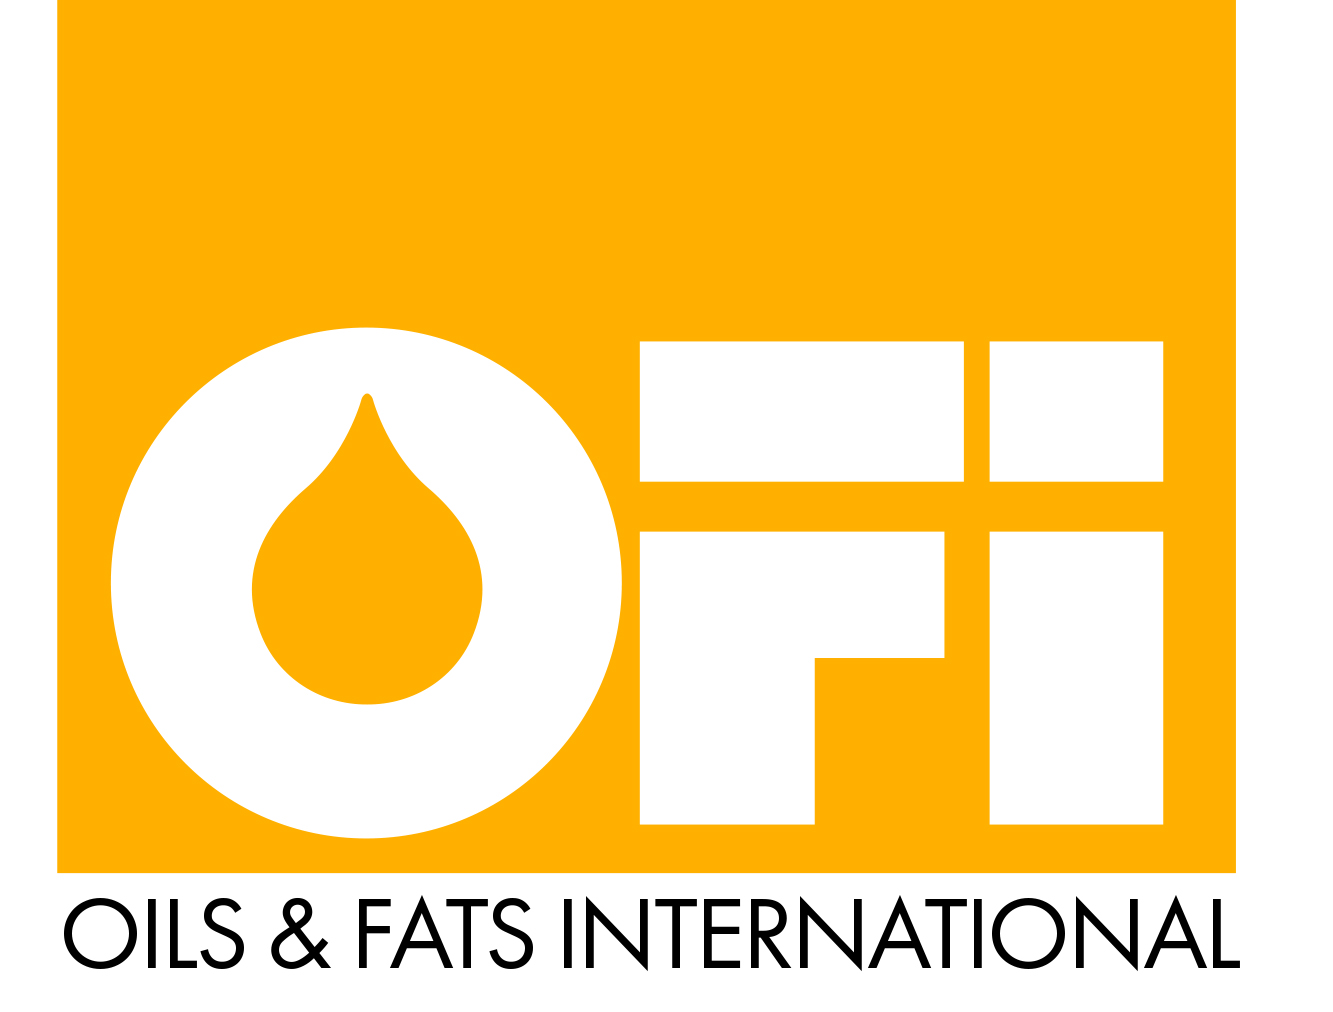 Oils & Fats International